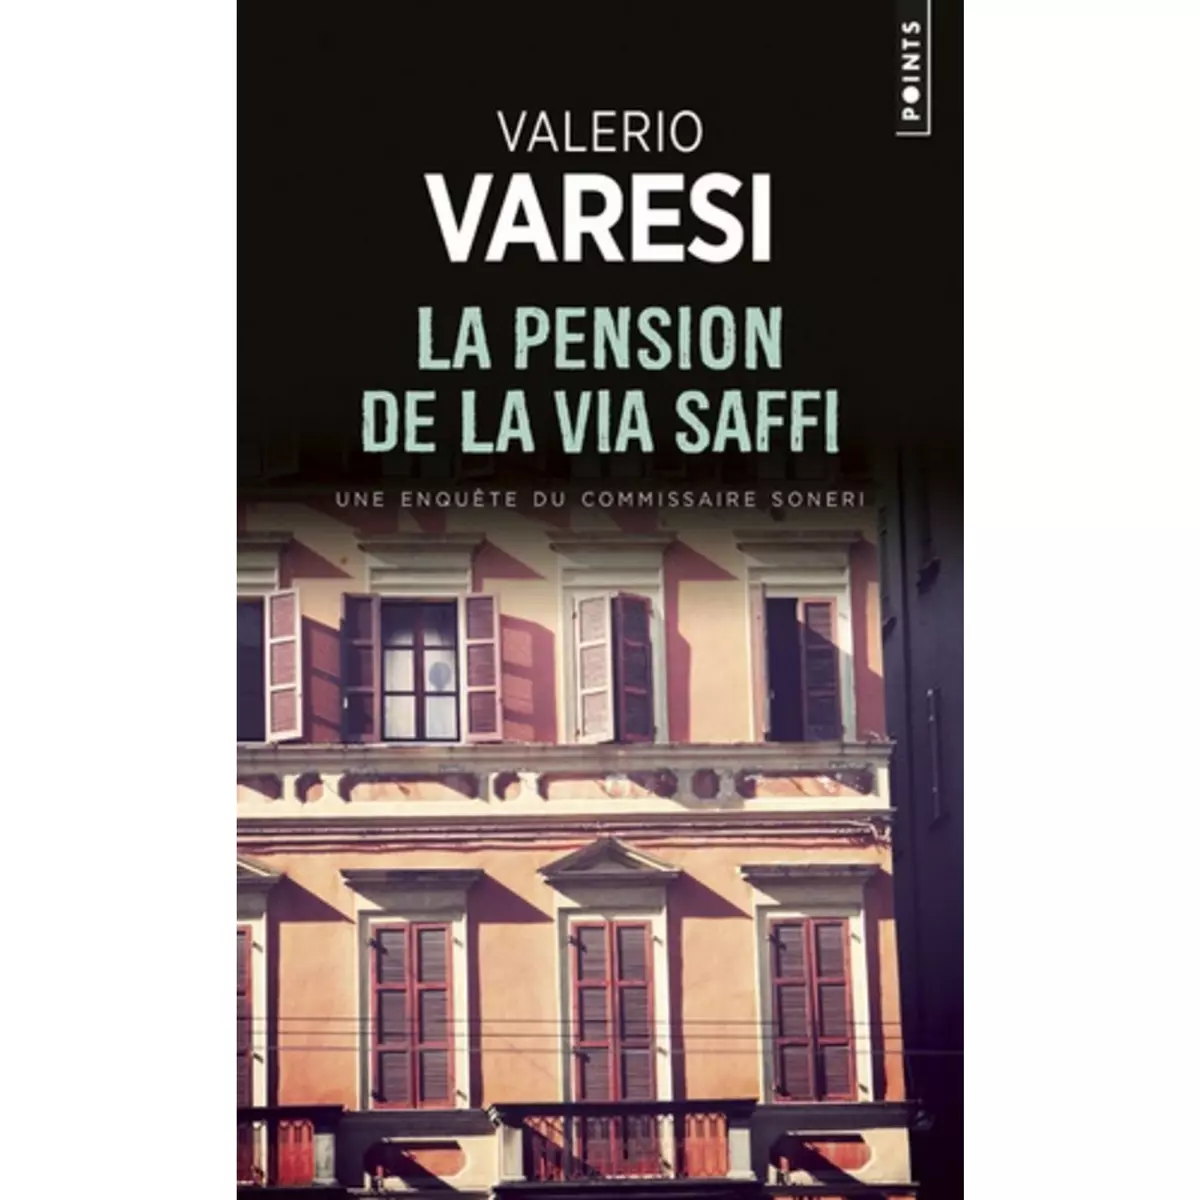  LA PENSION DE LA VIA SAFFI. UNE ENQUETE DU COMMISSAIRE SONERI, Varesi Valerio